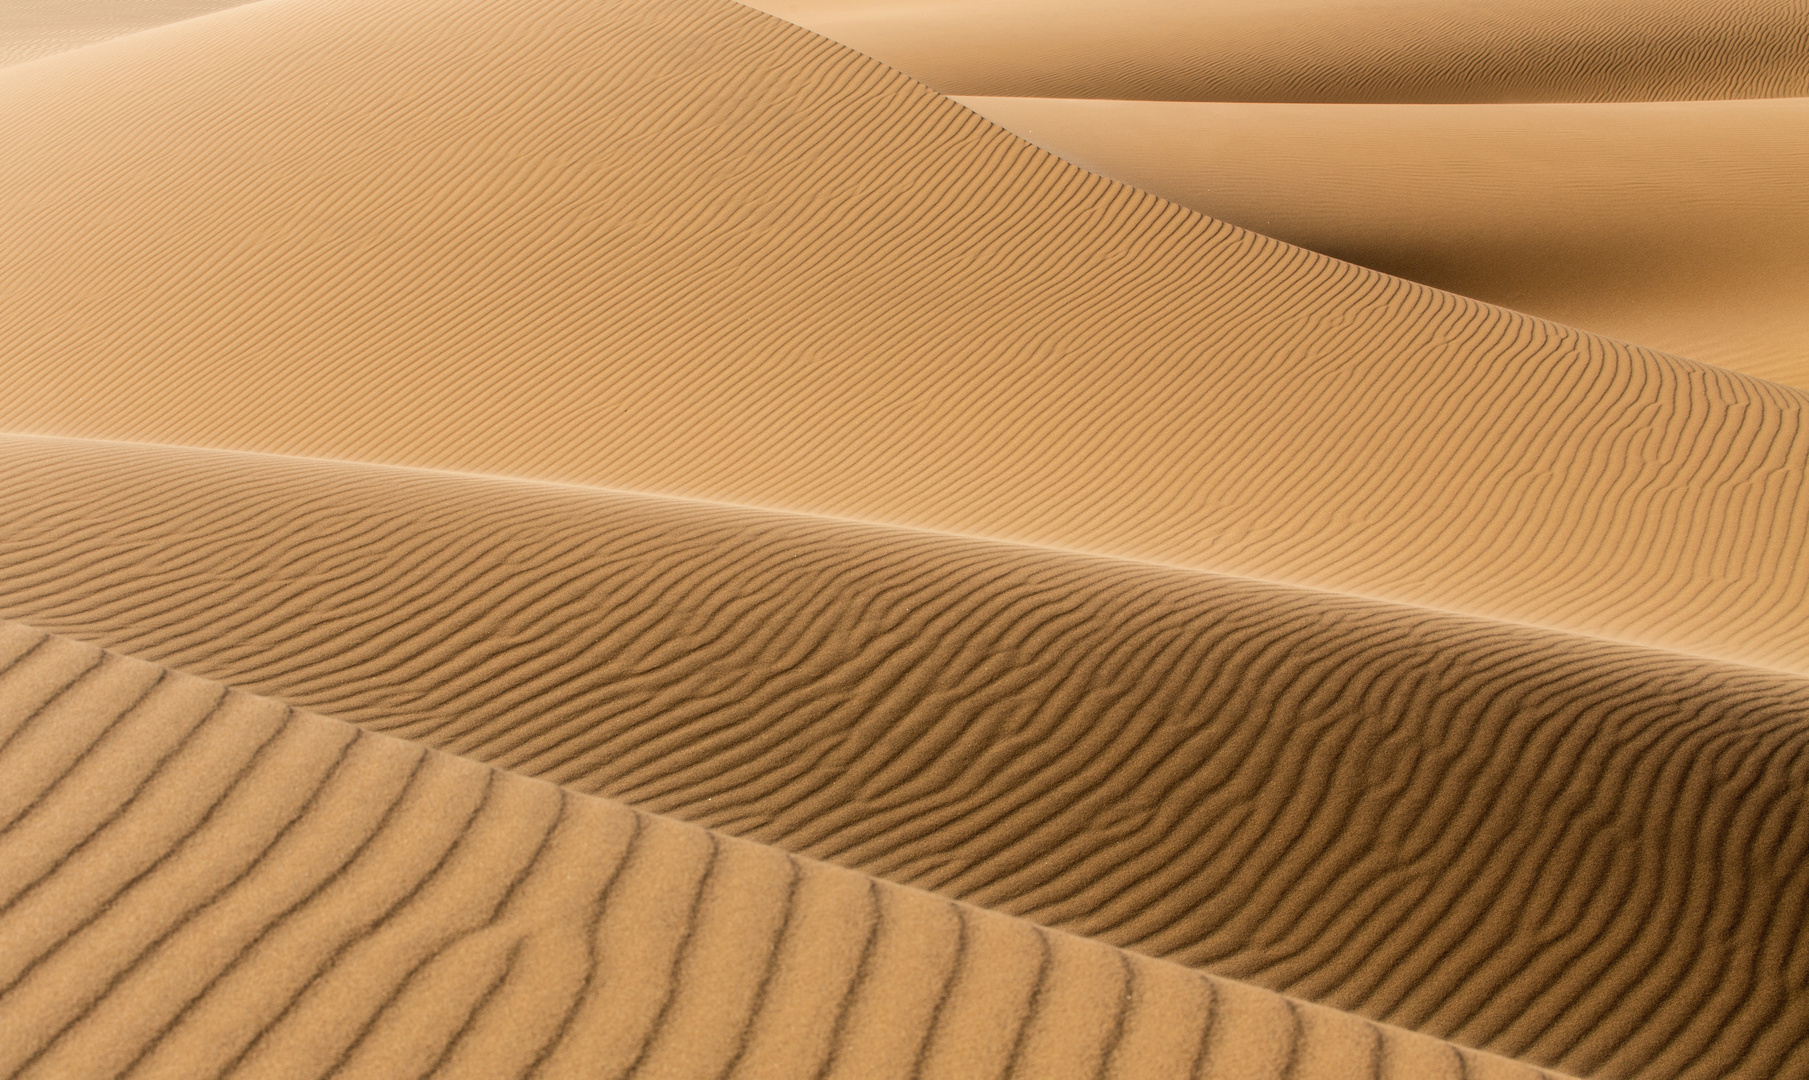 Textures in the Dunes